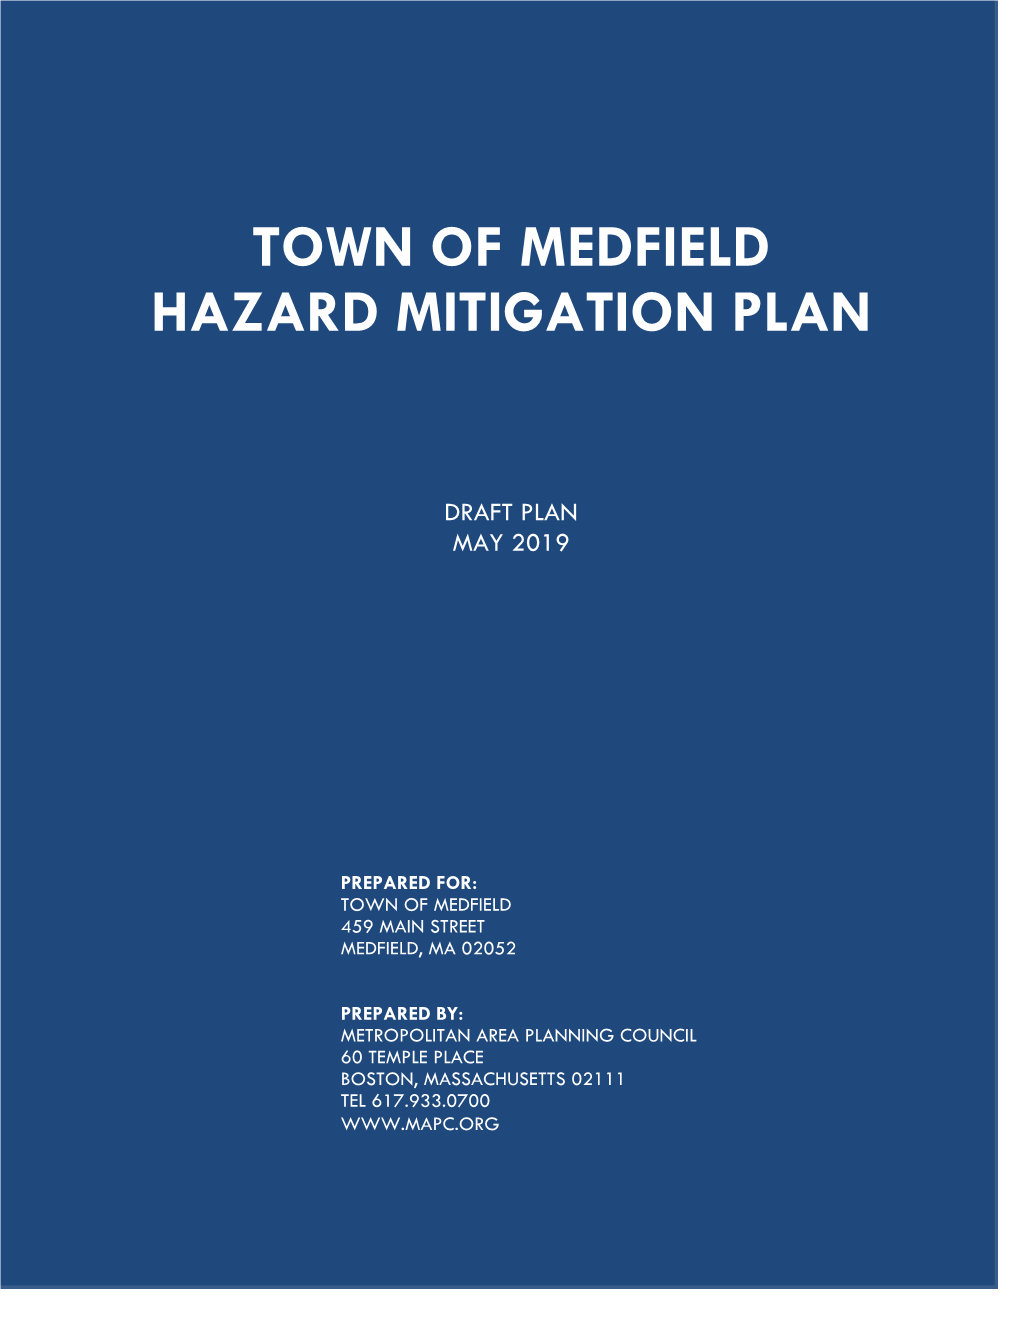 What Is a Hazard Mitigation Plan?